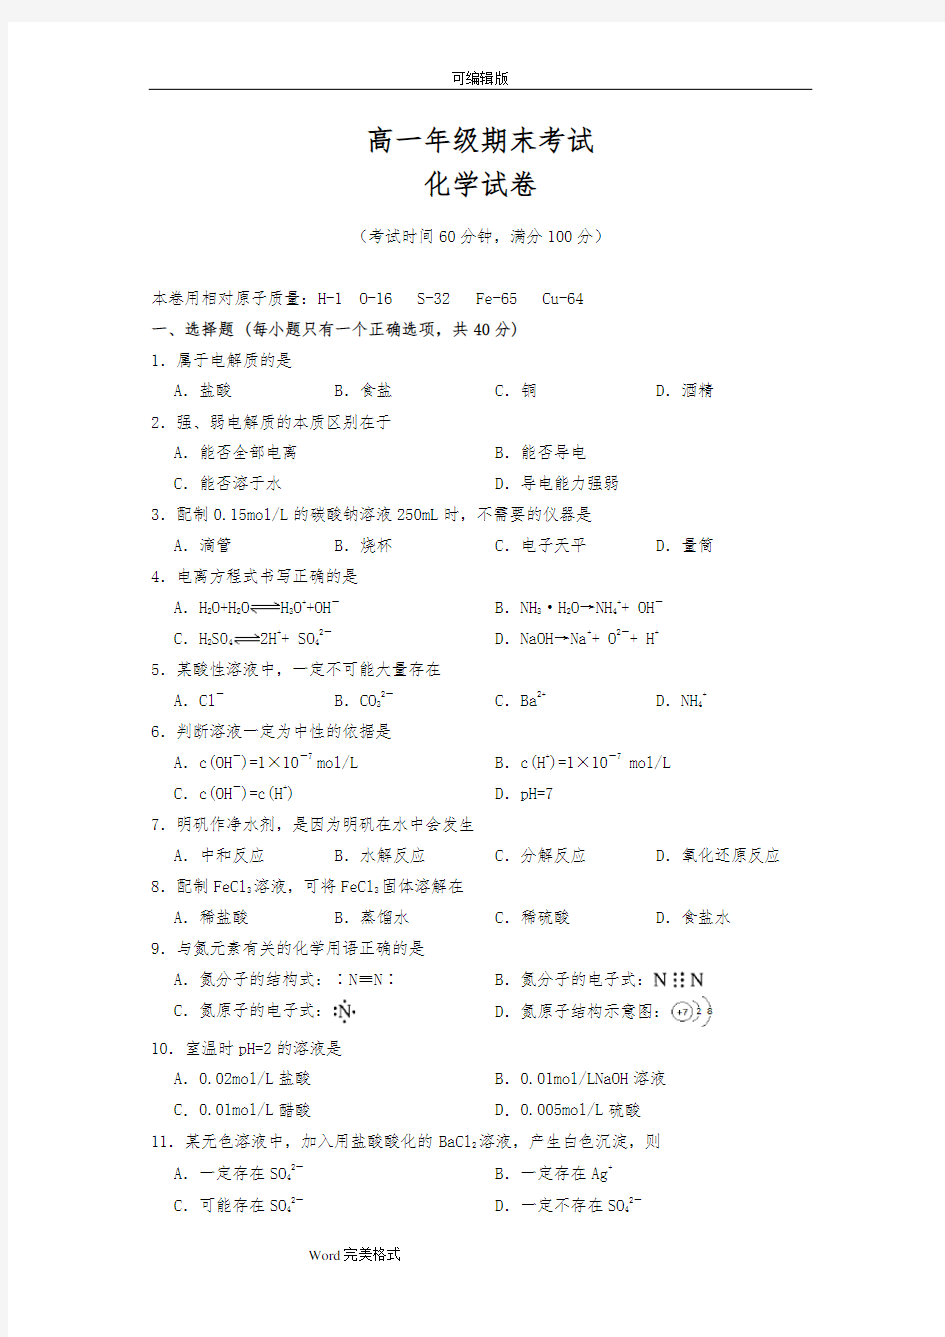 上海化学高中一年级期末考试卷(试卷与答案)